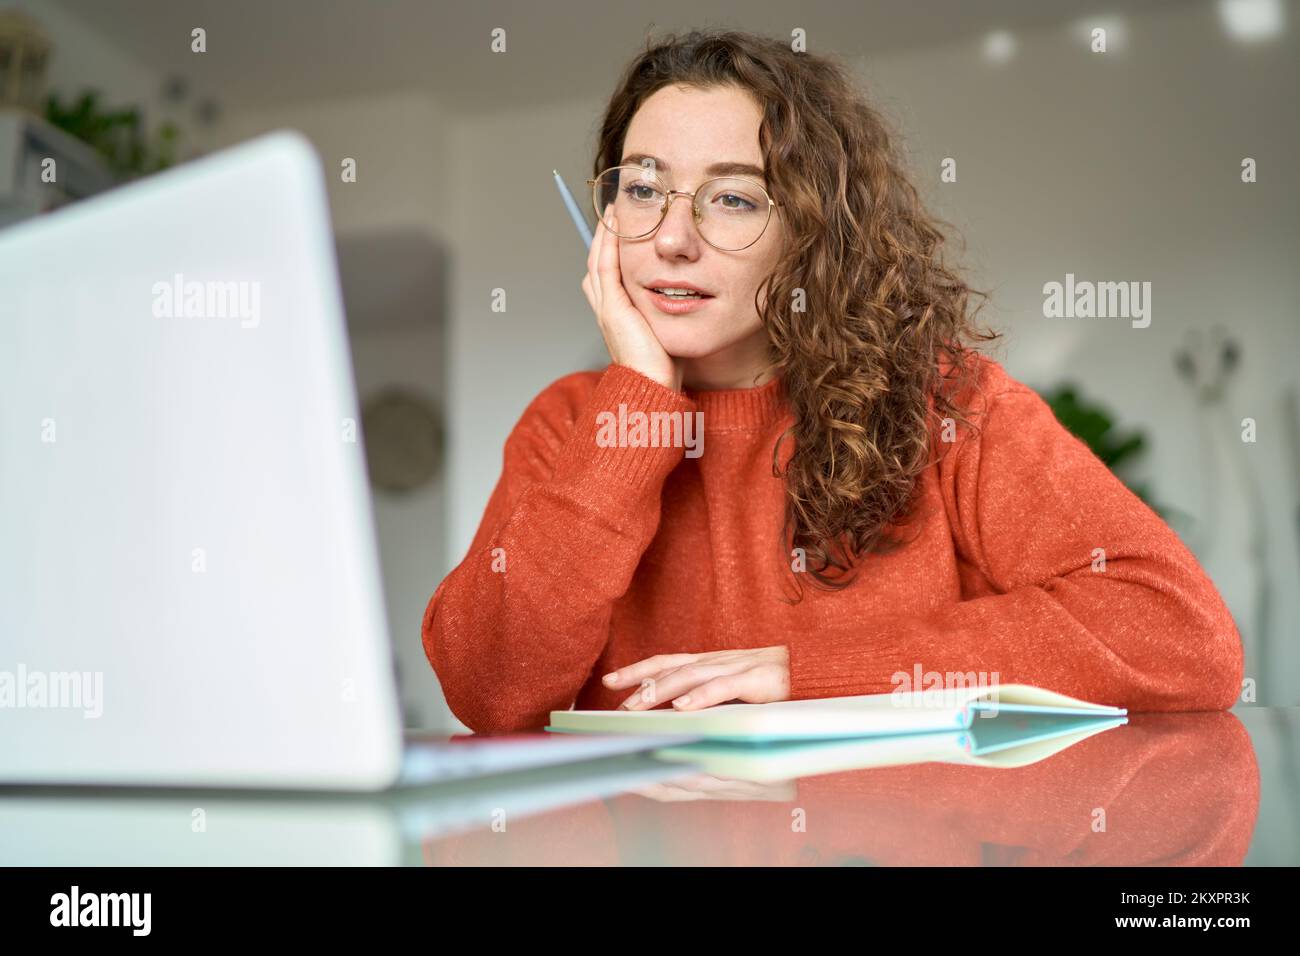 Jeune femme étudiant utilisant un ordinateur portable regardant la rédaction de webinars en ligne à la maison. Banque D'Images